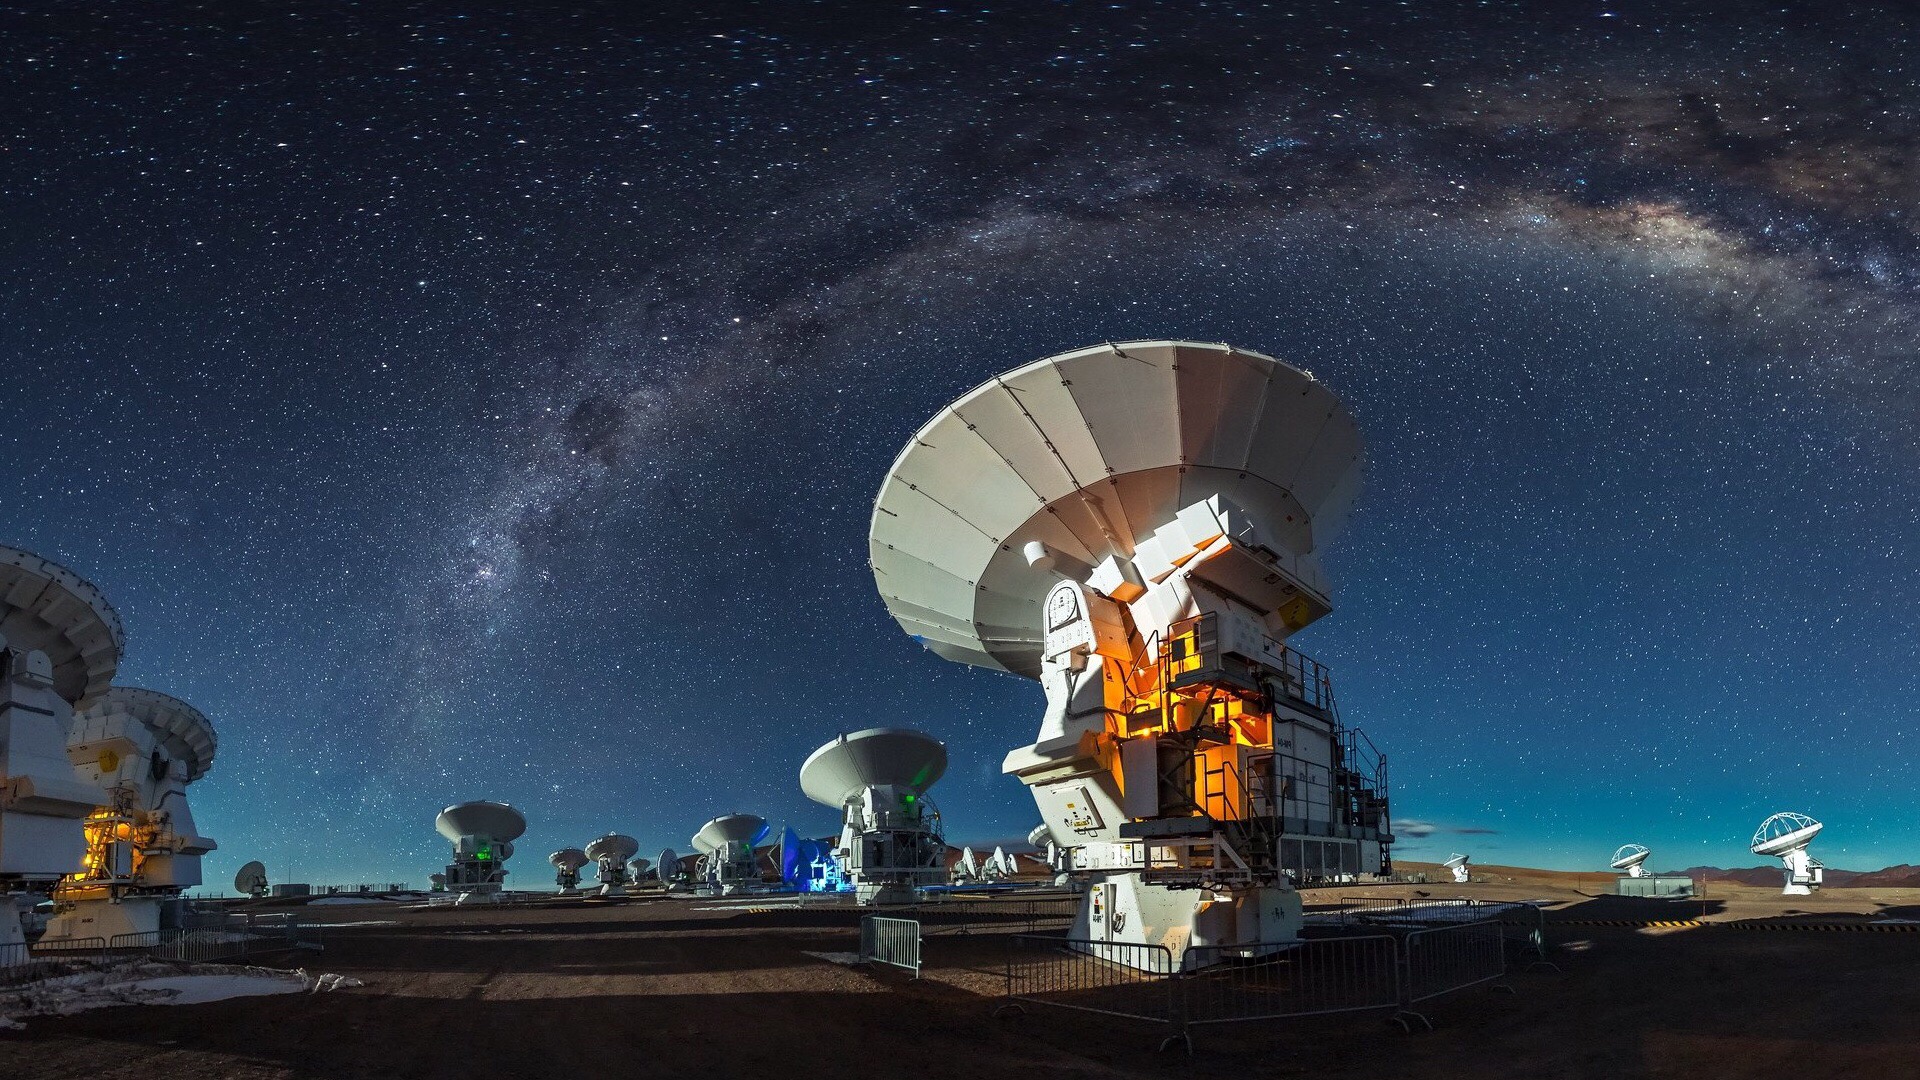 智利的阿塔卡马沙漠，世界天文观测中心，观星爱好者的天堂。智利的阿塔卡马沙漠，因其得天独厚的自然条件，